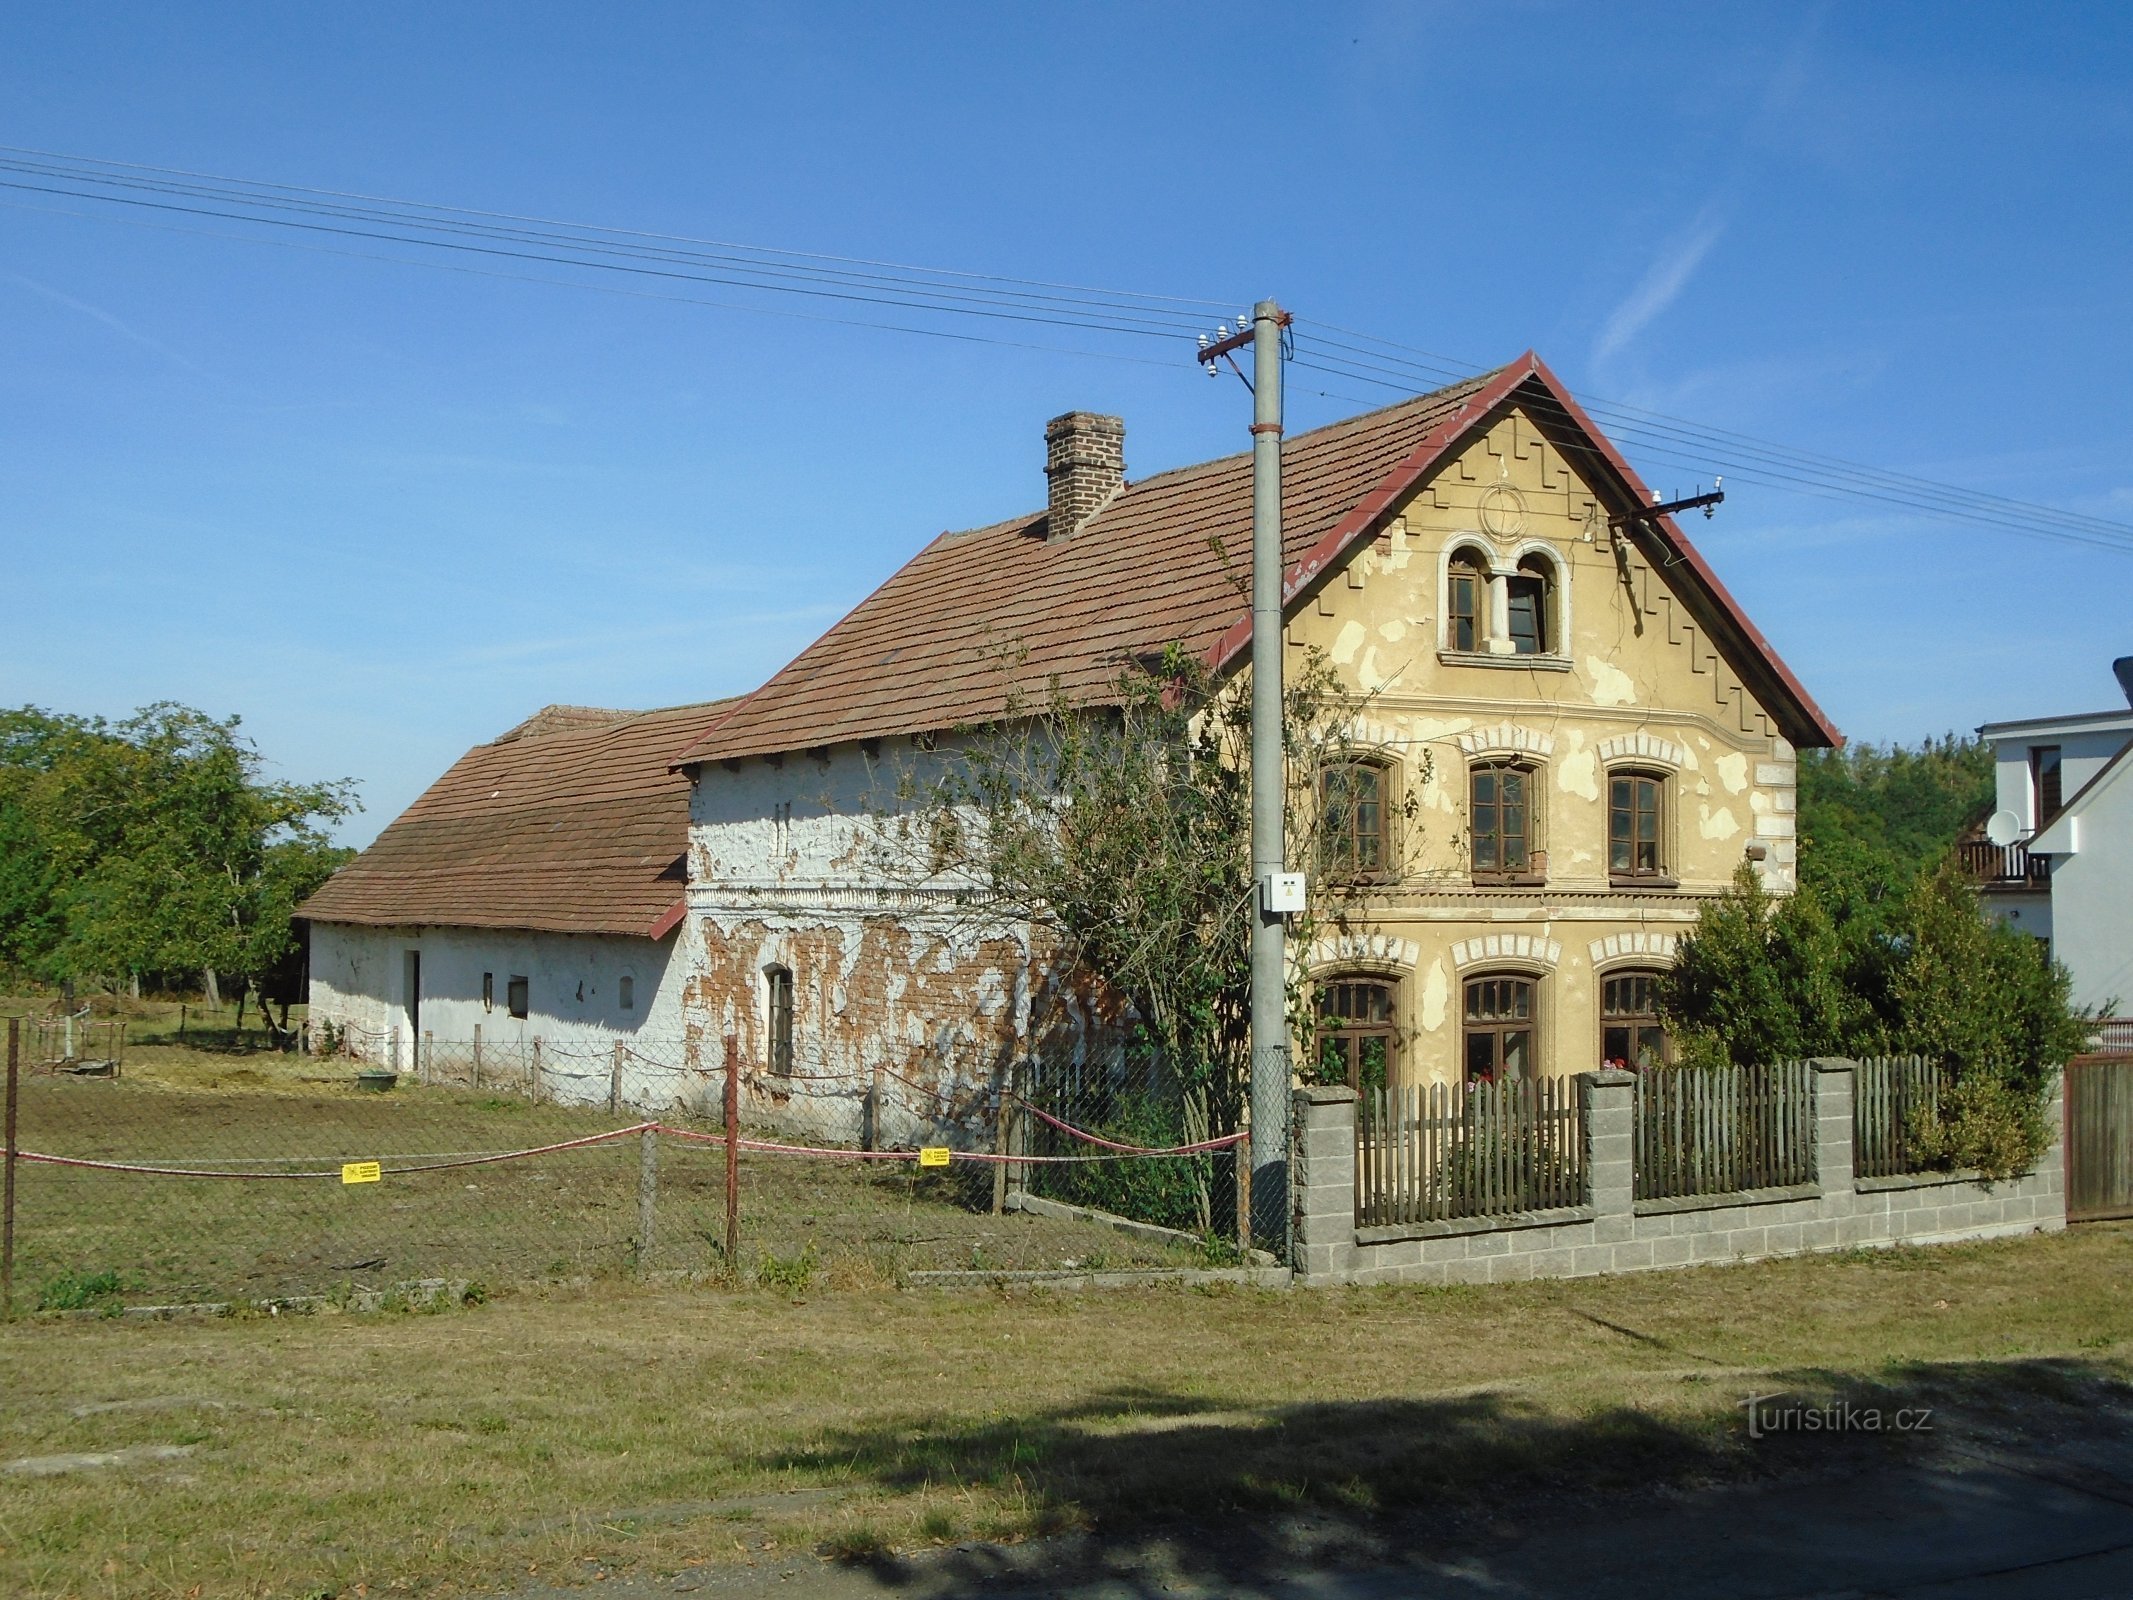 Phía sau trường số 4 (Vysoké Chvojno)